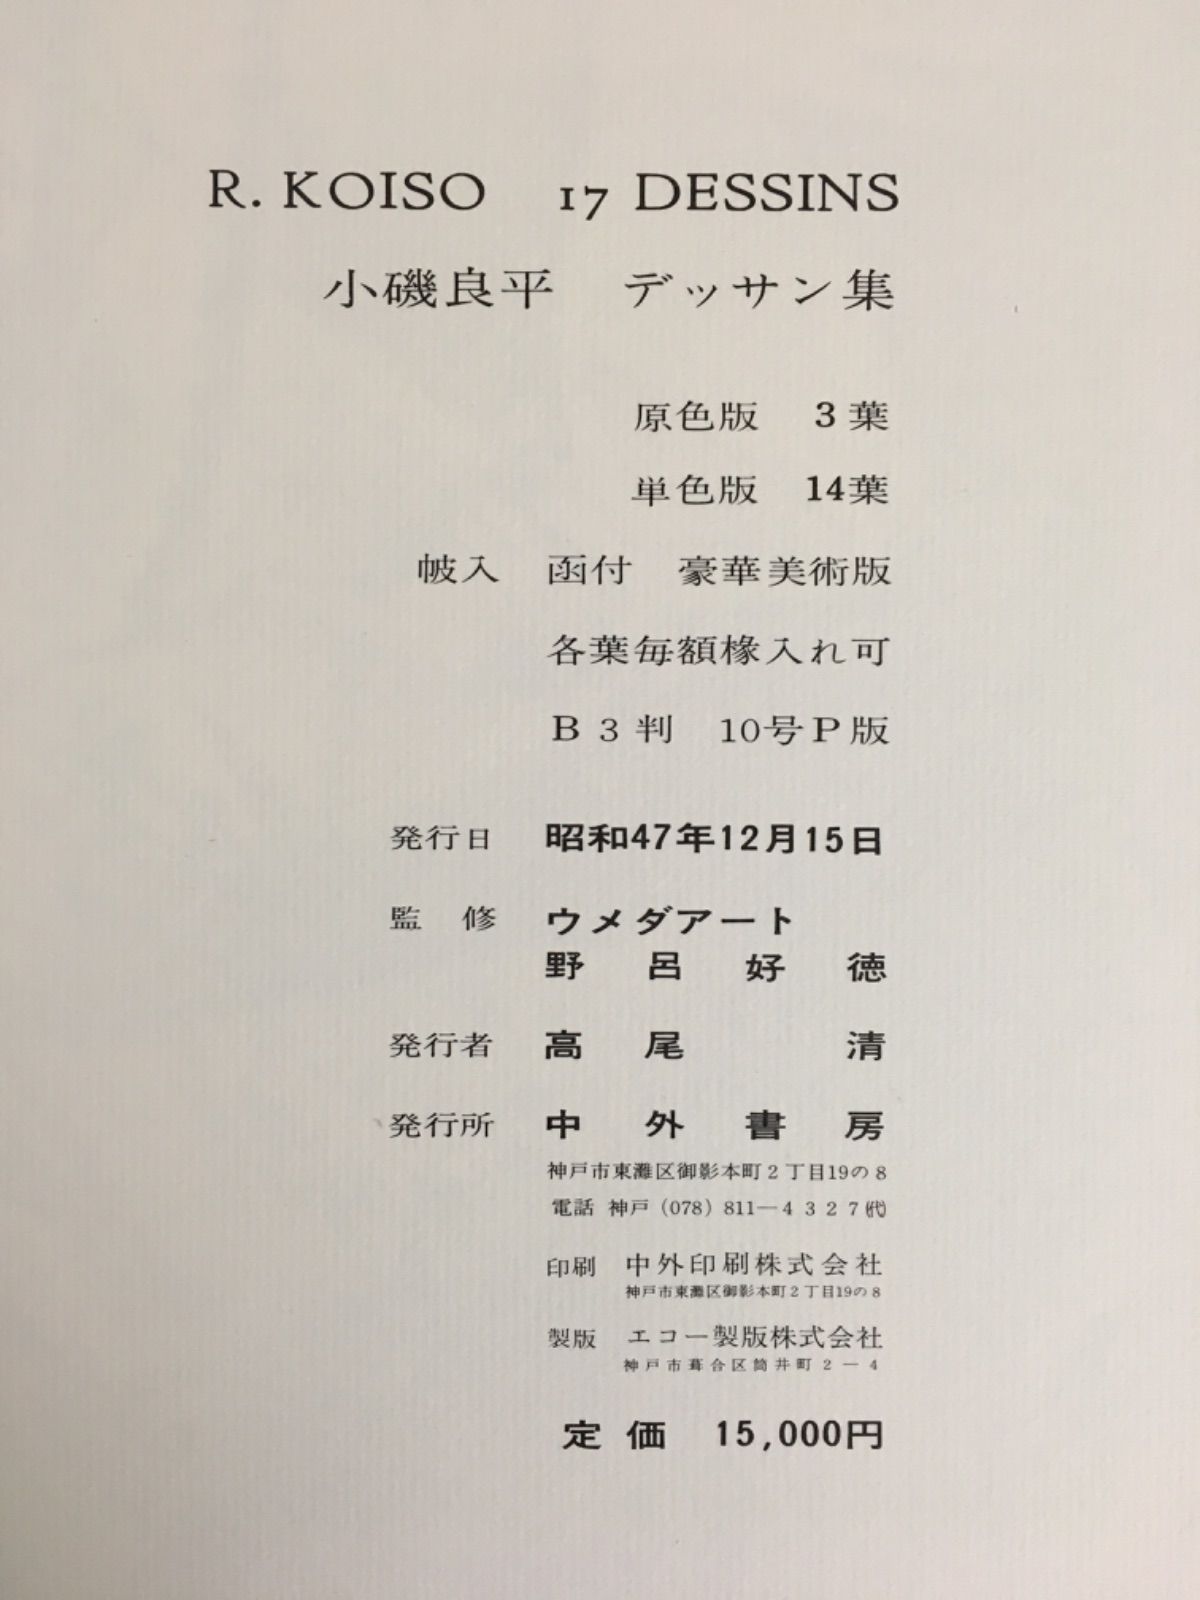 小磯良平デッサン集 R.KOISO 17 DESSINS - 青い森書房 - メルカリ